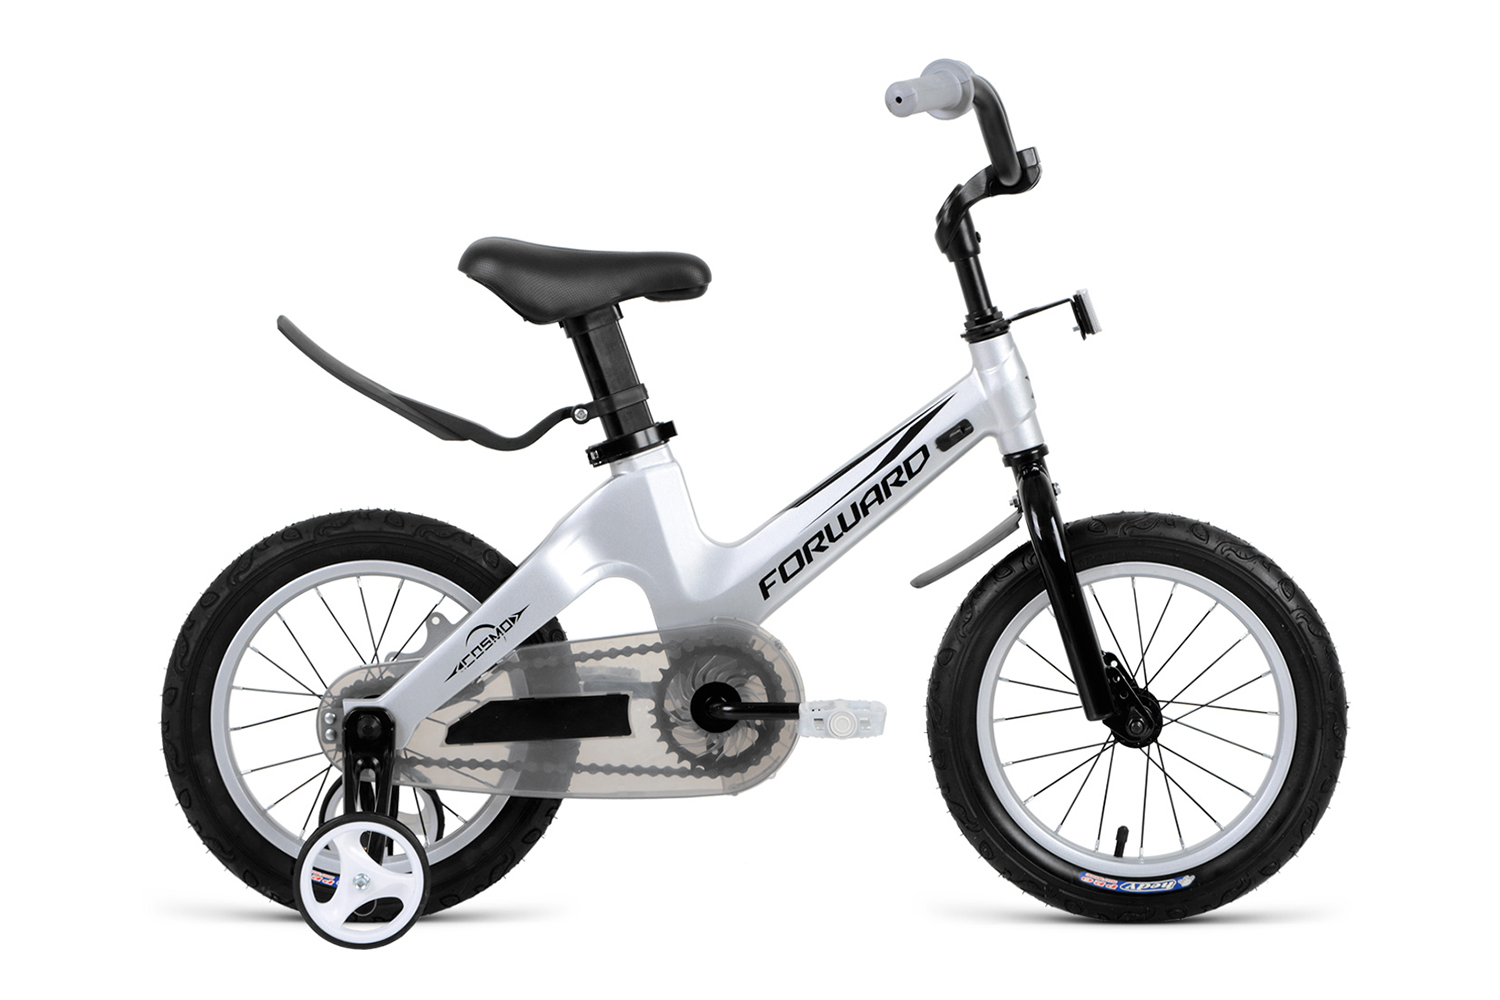  Отзывы о Детском велосипеде Forward Cosmo 12 (2021) 2021